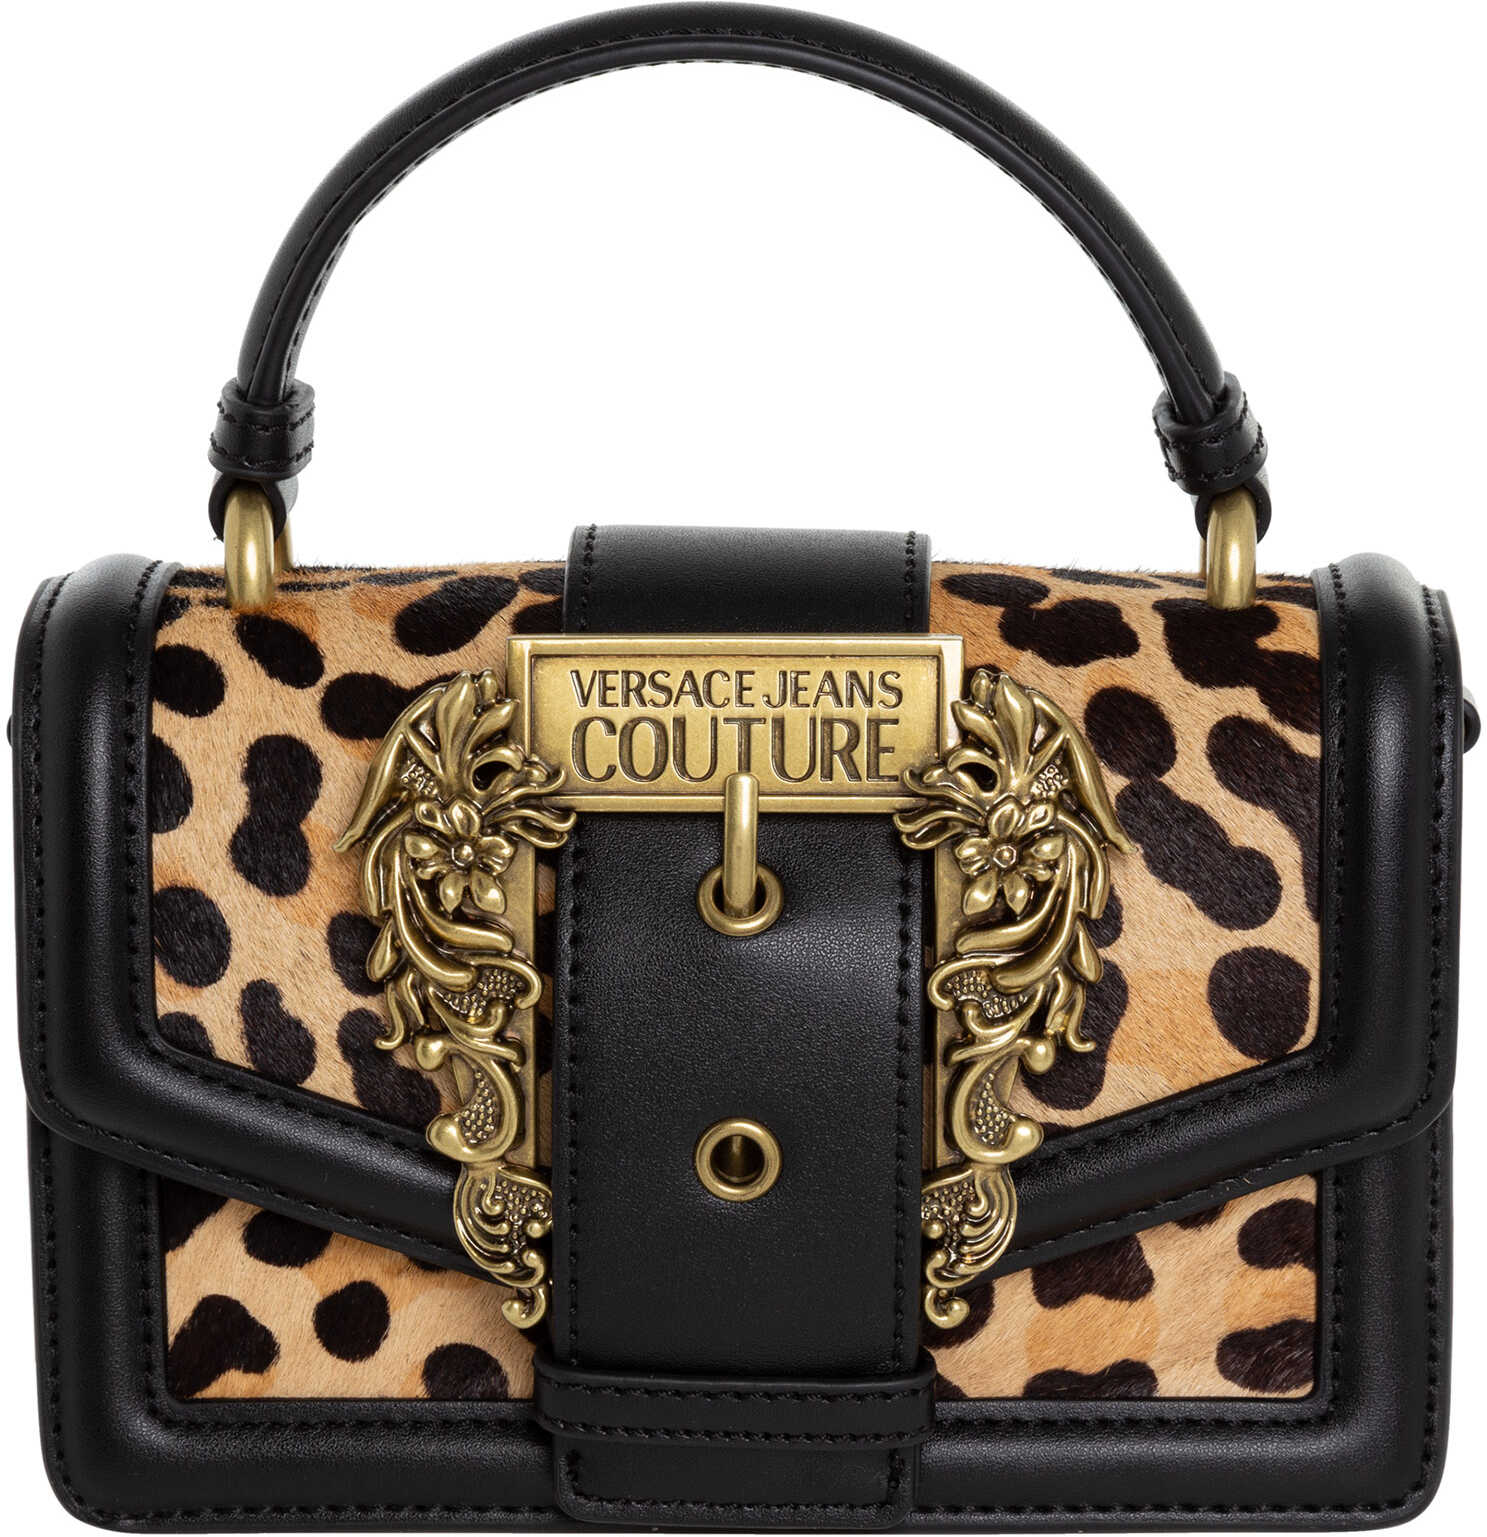 Versace Jeans Couture Handbag Black image12